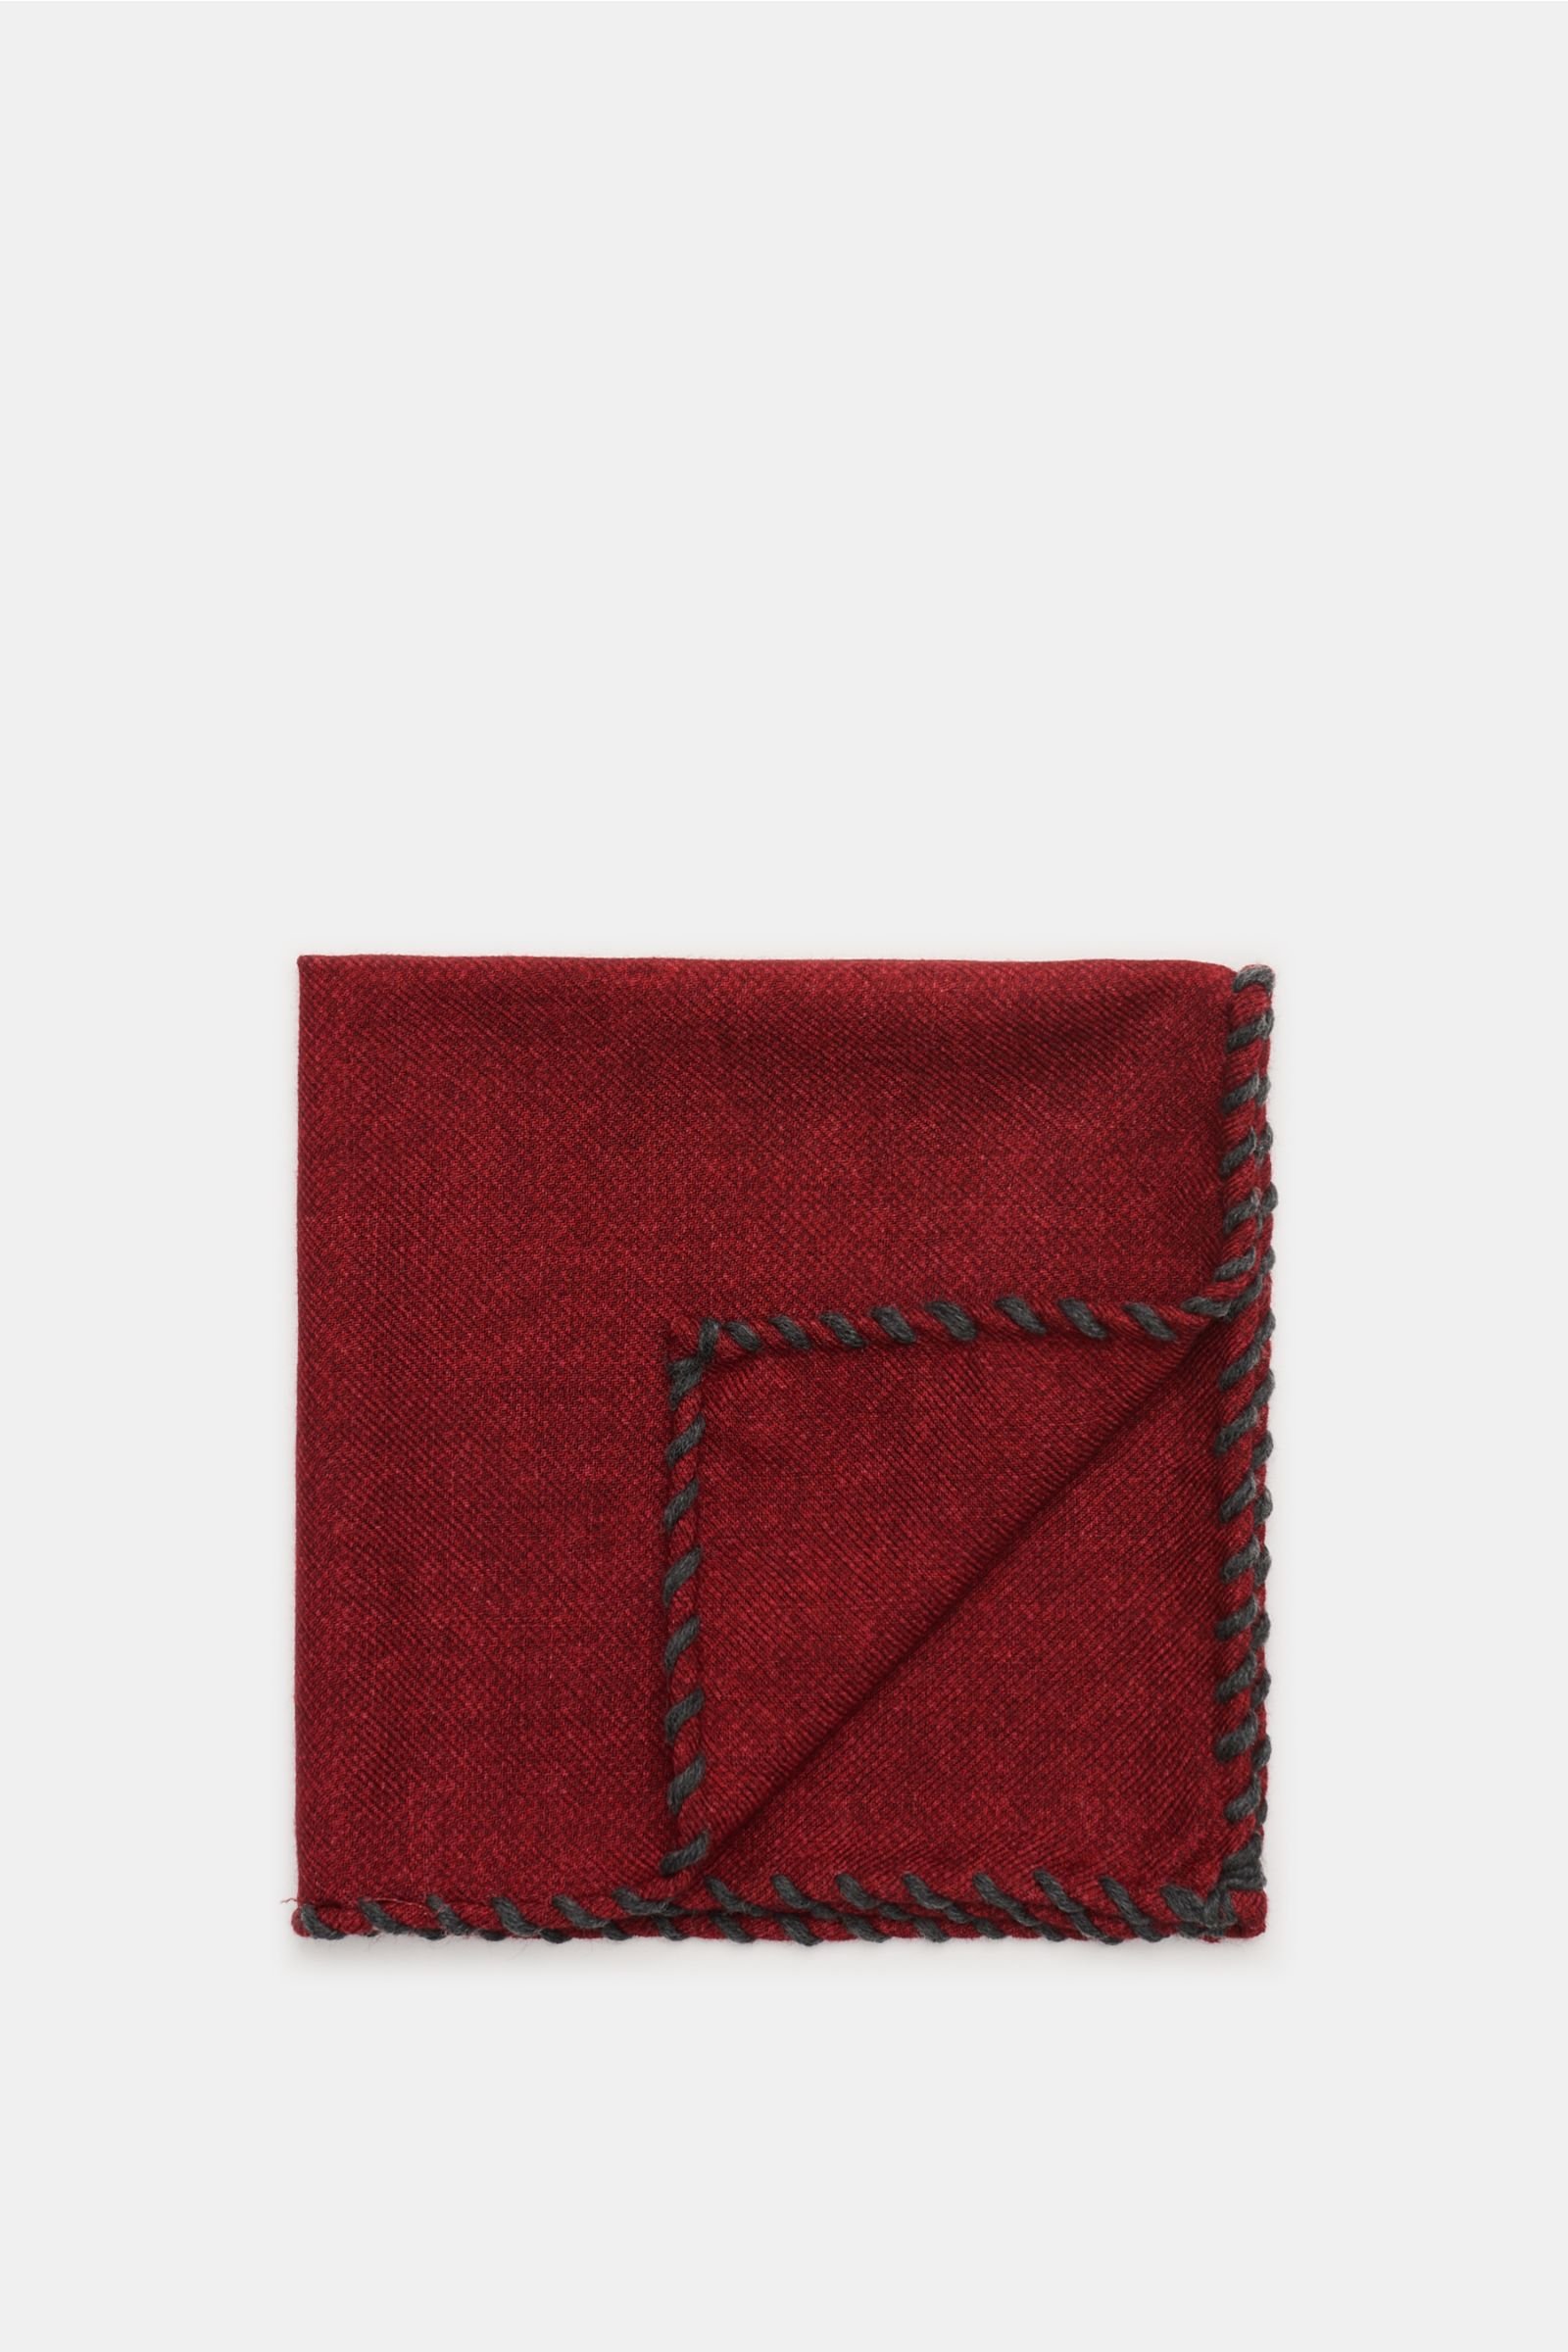 Pocket square dark red/dark grey